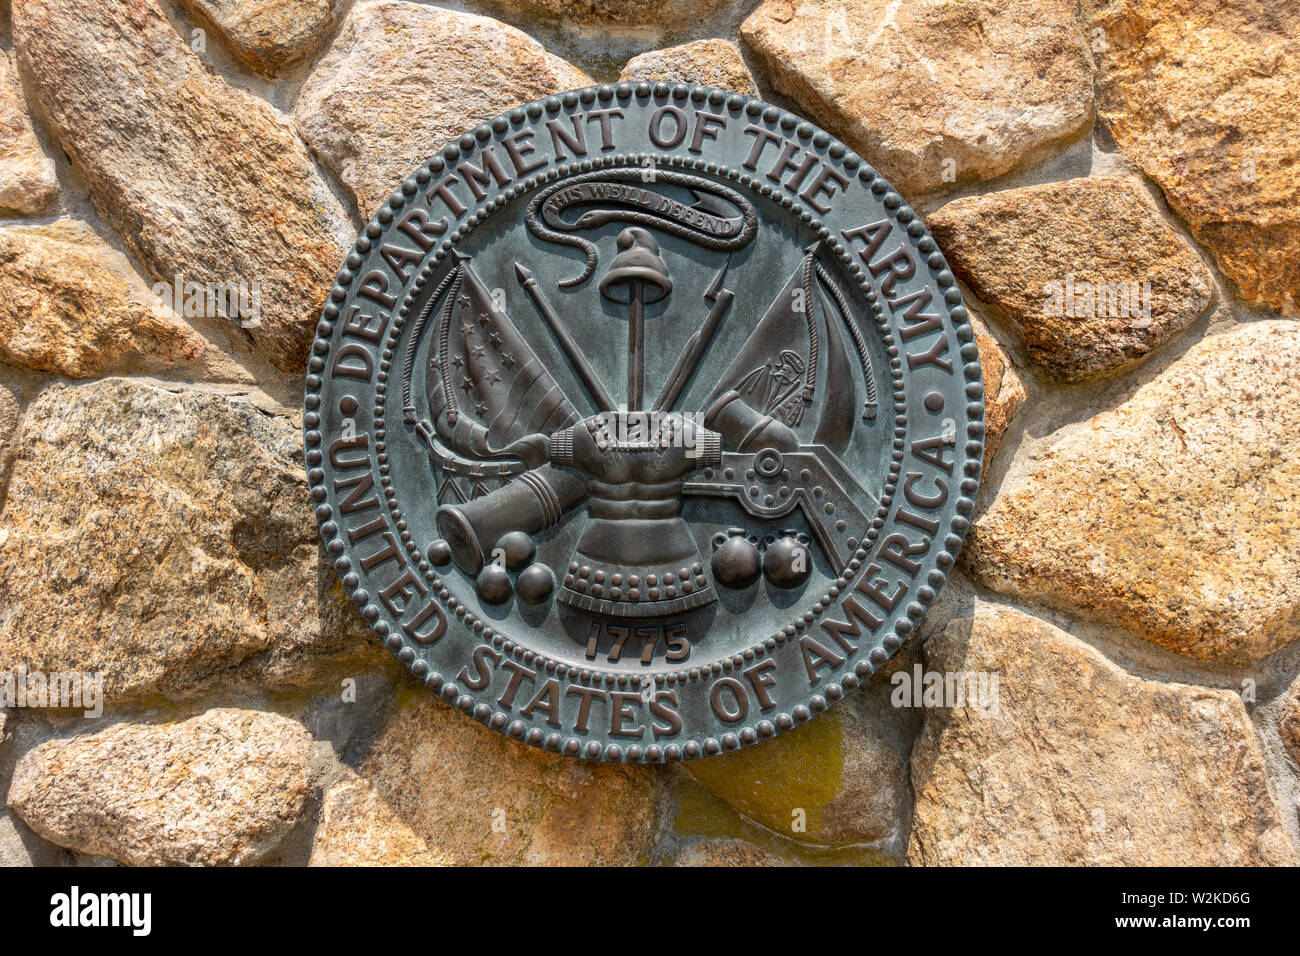 États-unis d'Amérique Département de l'Armée plaque au cimetière national dans la région de Bourne, Cape Cod, Massachusetts USA Banque D'Images